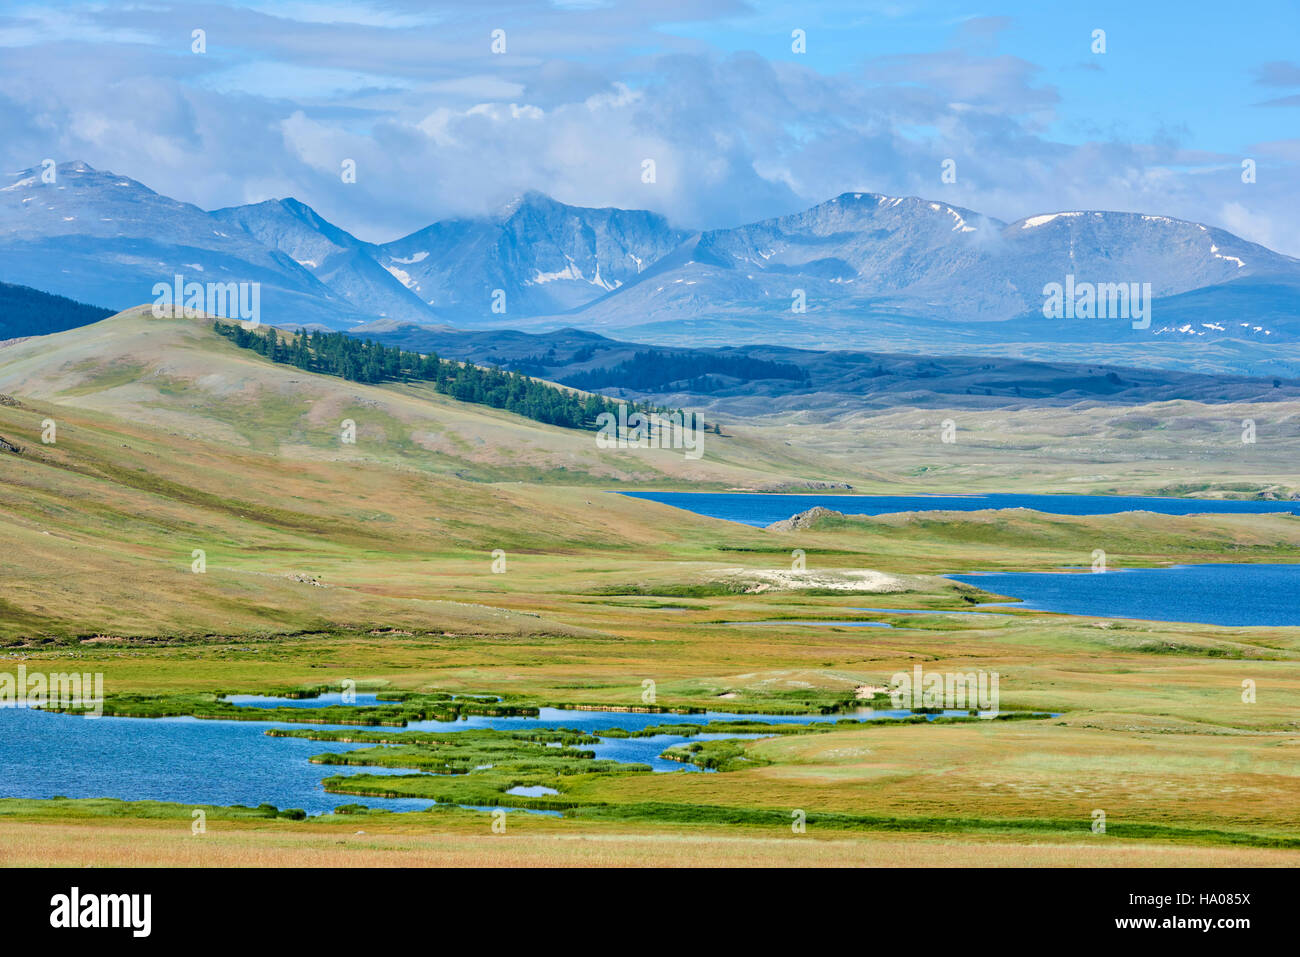 Mongolia, Bayan-Ulgii provincia, Mongolia occidentale, parco nazionale di Tavan Bogd, il 5 vetta più alta delle montagne degli Altai, Dayan Nuur lake Foto Stock